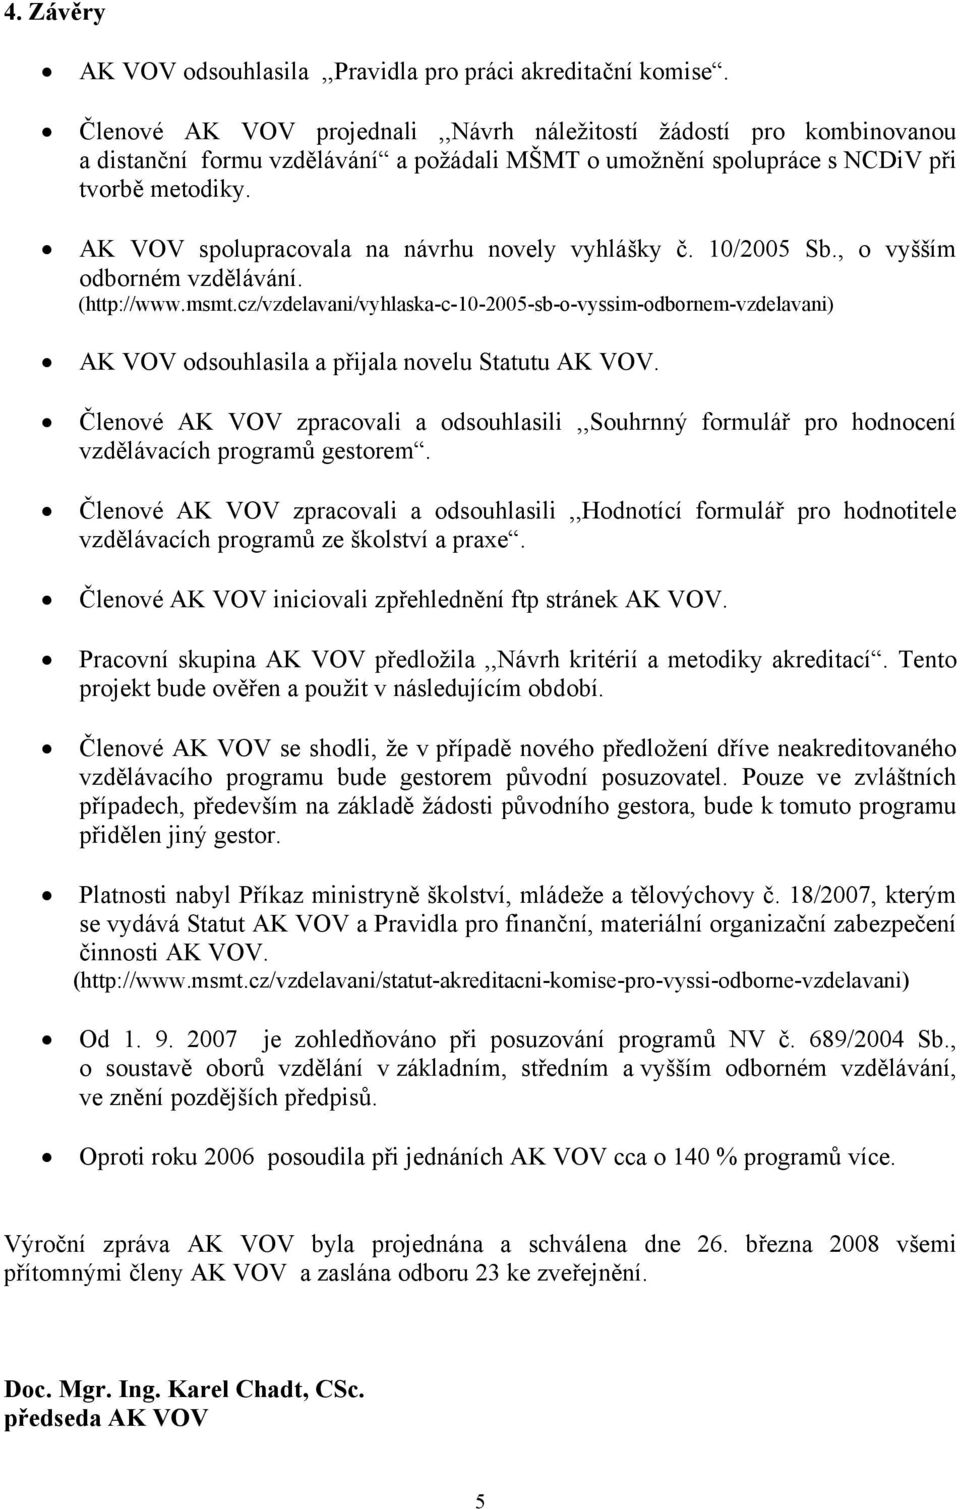 AK VOV spolupracovala na návrhu novely vyhlášky č. 10/2005 Sb., o vyšším odborném vzdělávání. (http://www.msmt.